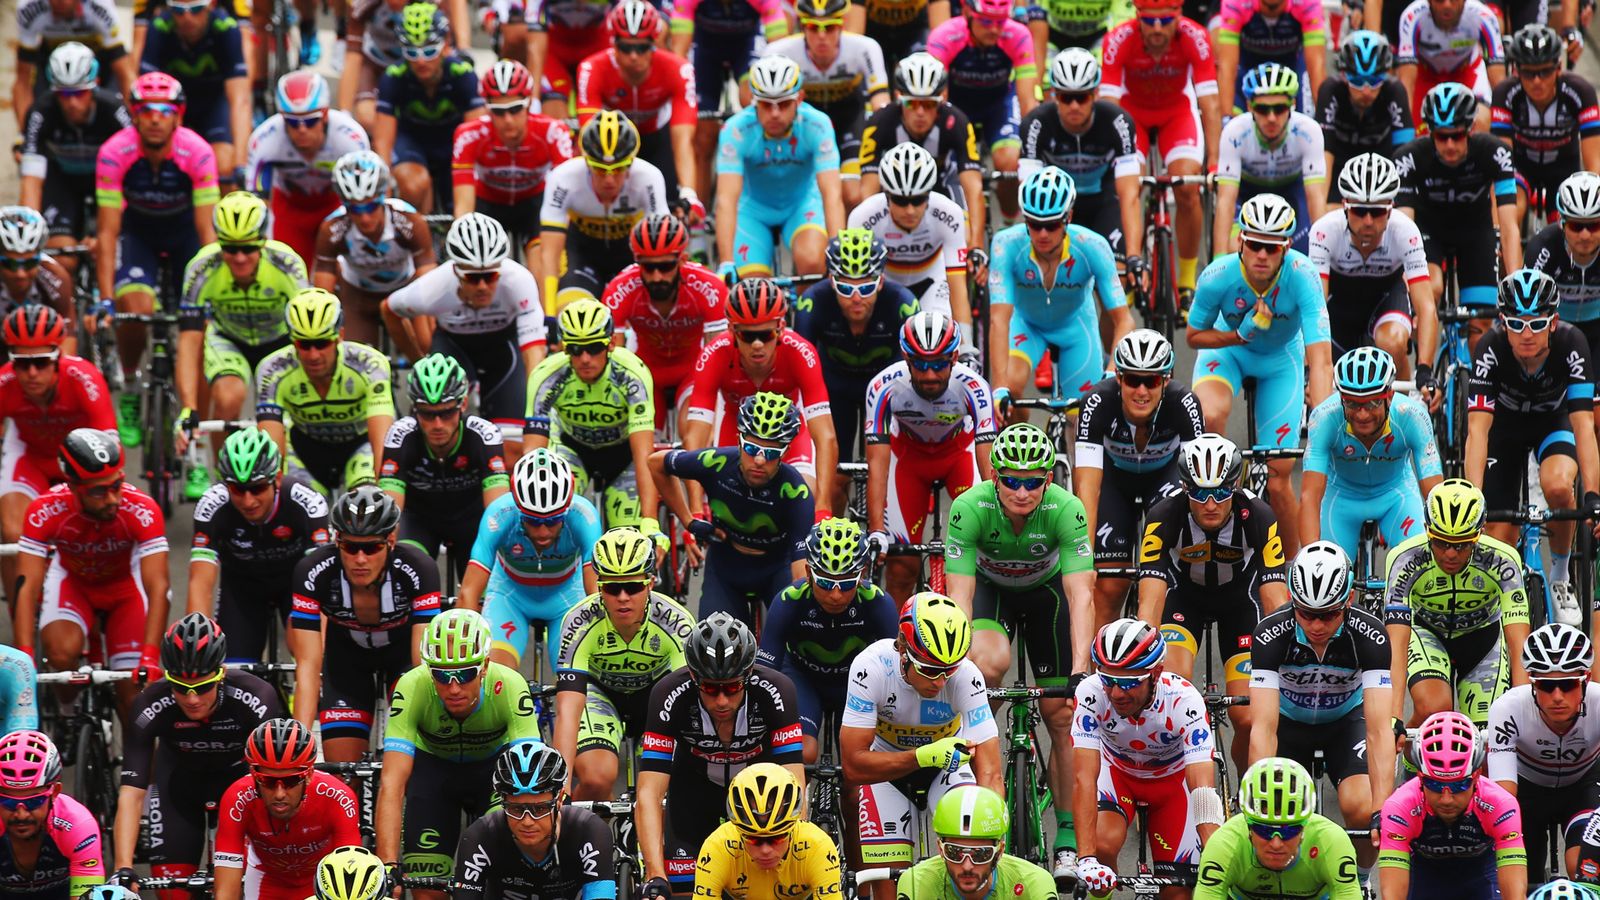 Tour de France starts in 2018 in Vendee and Pays de la Loire